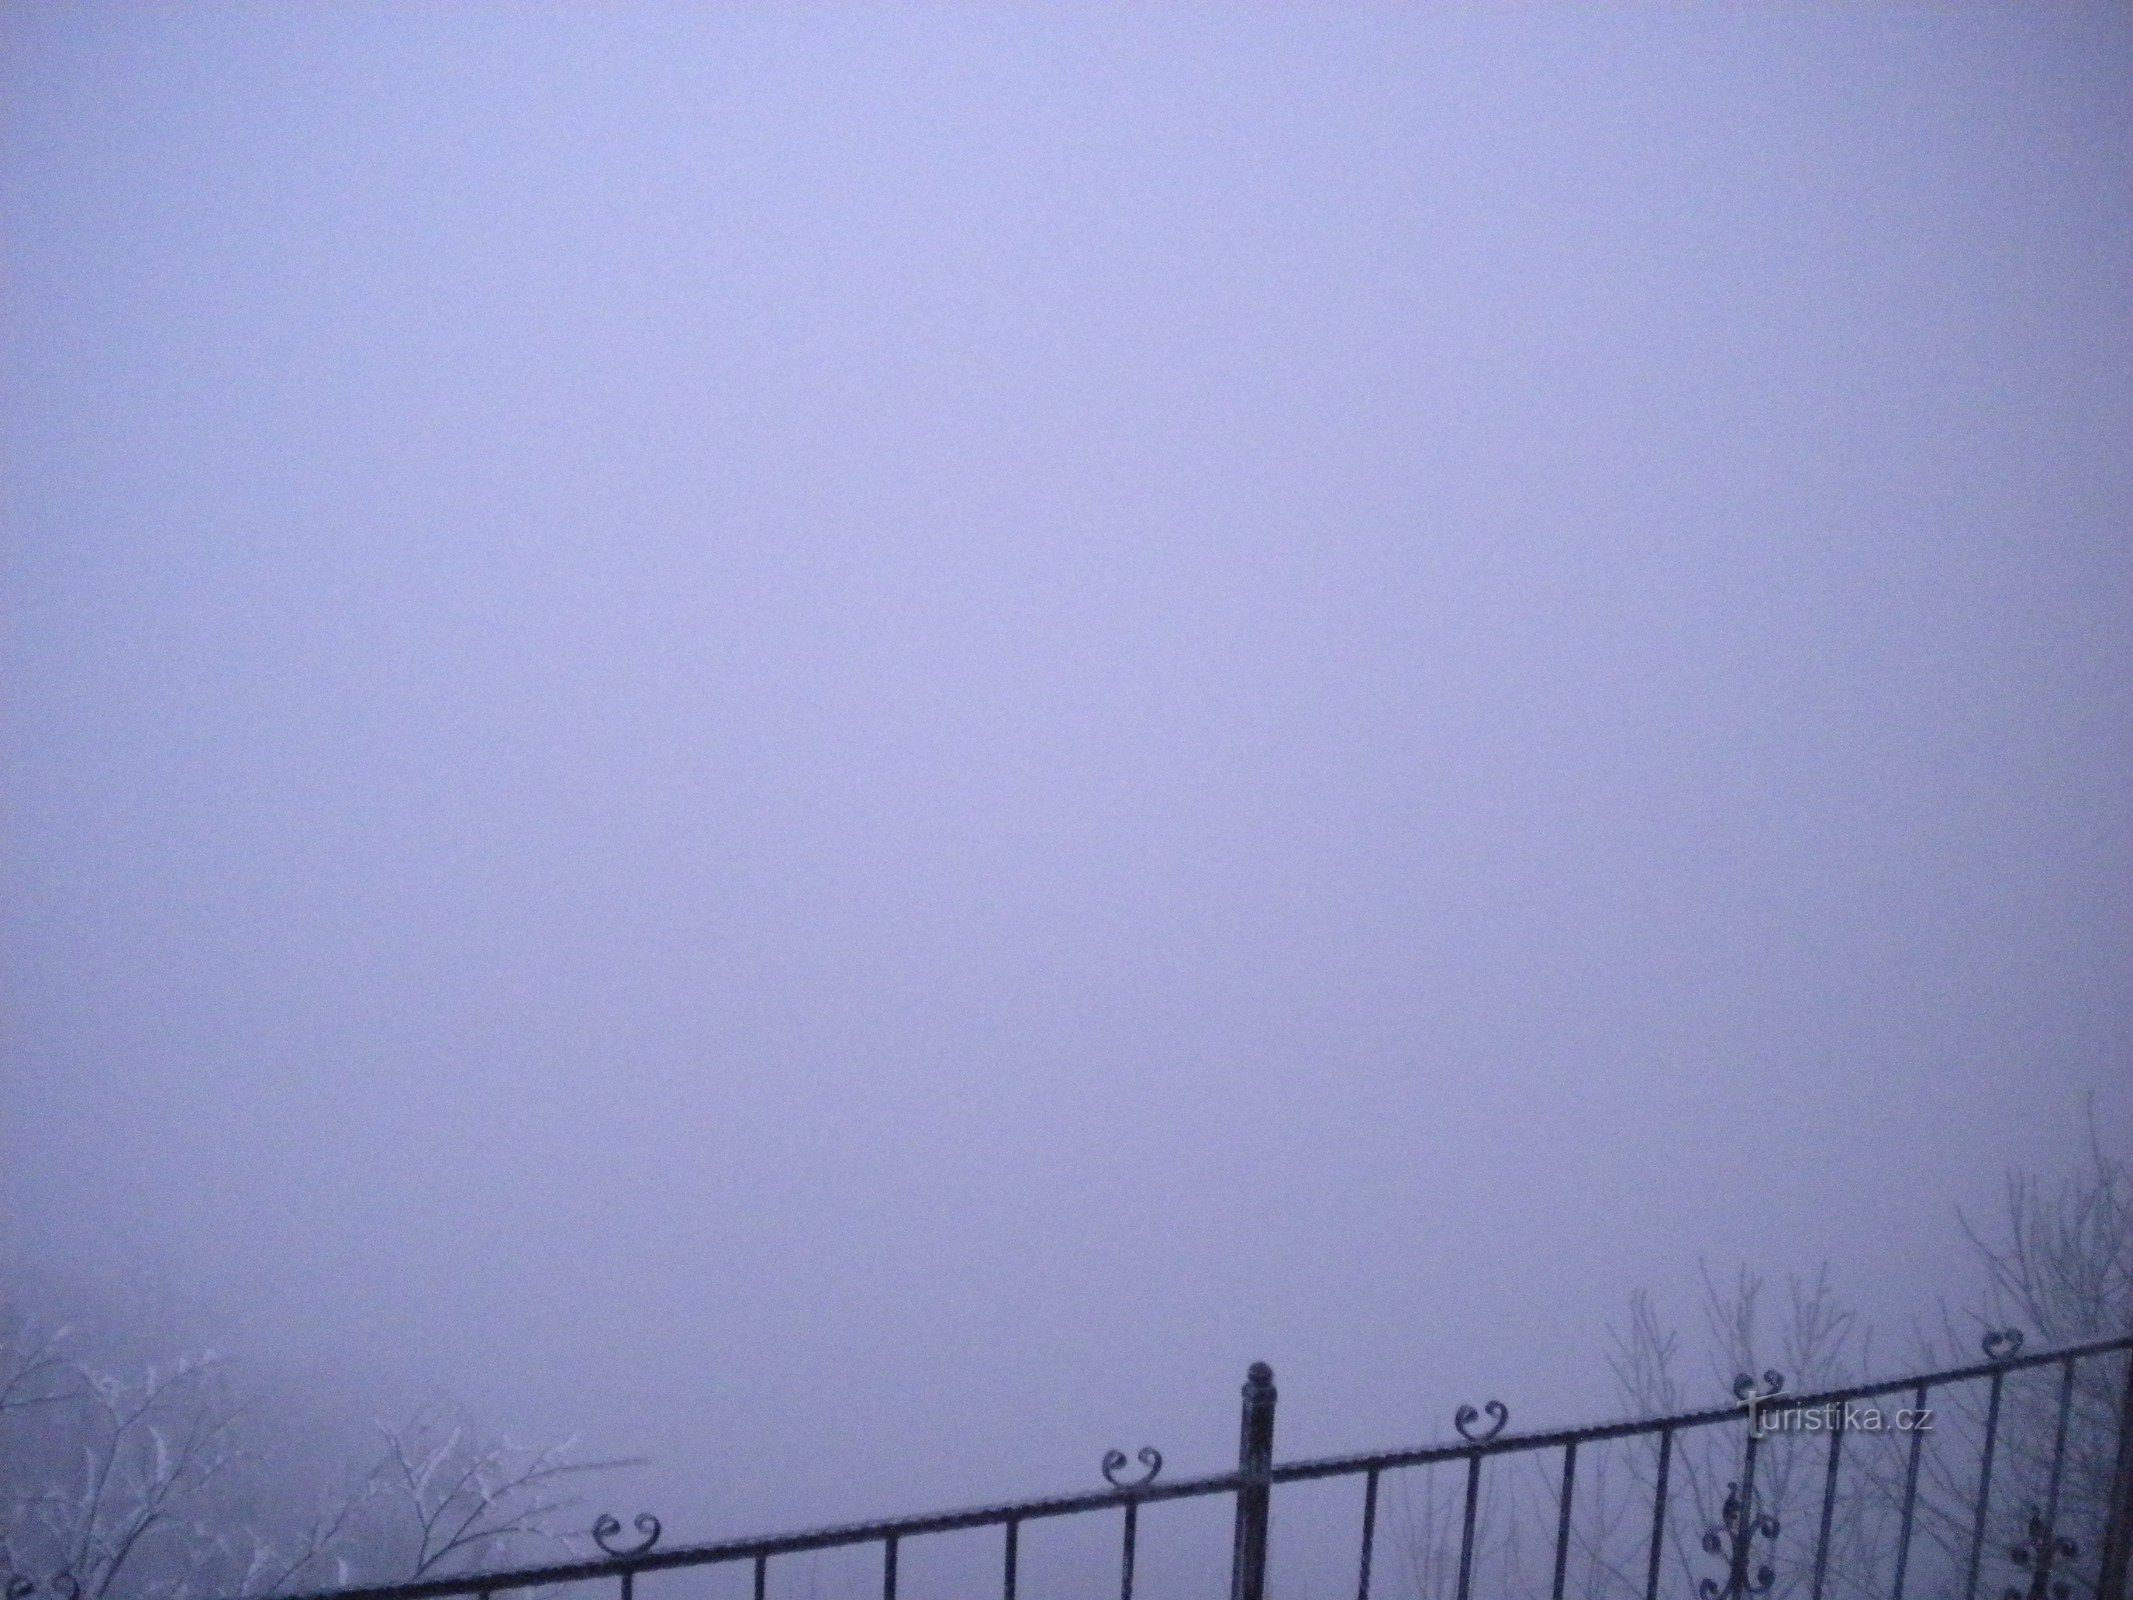 ロヴォシュがどこかにいるかもしれません。 ミレショフカの頂上からの眺め